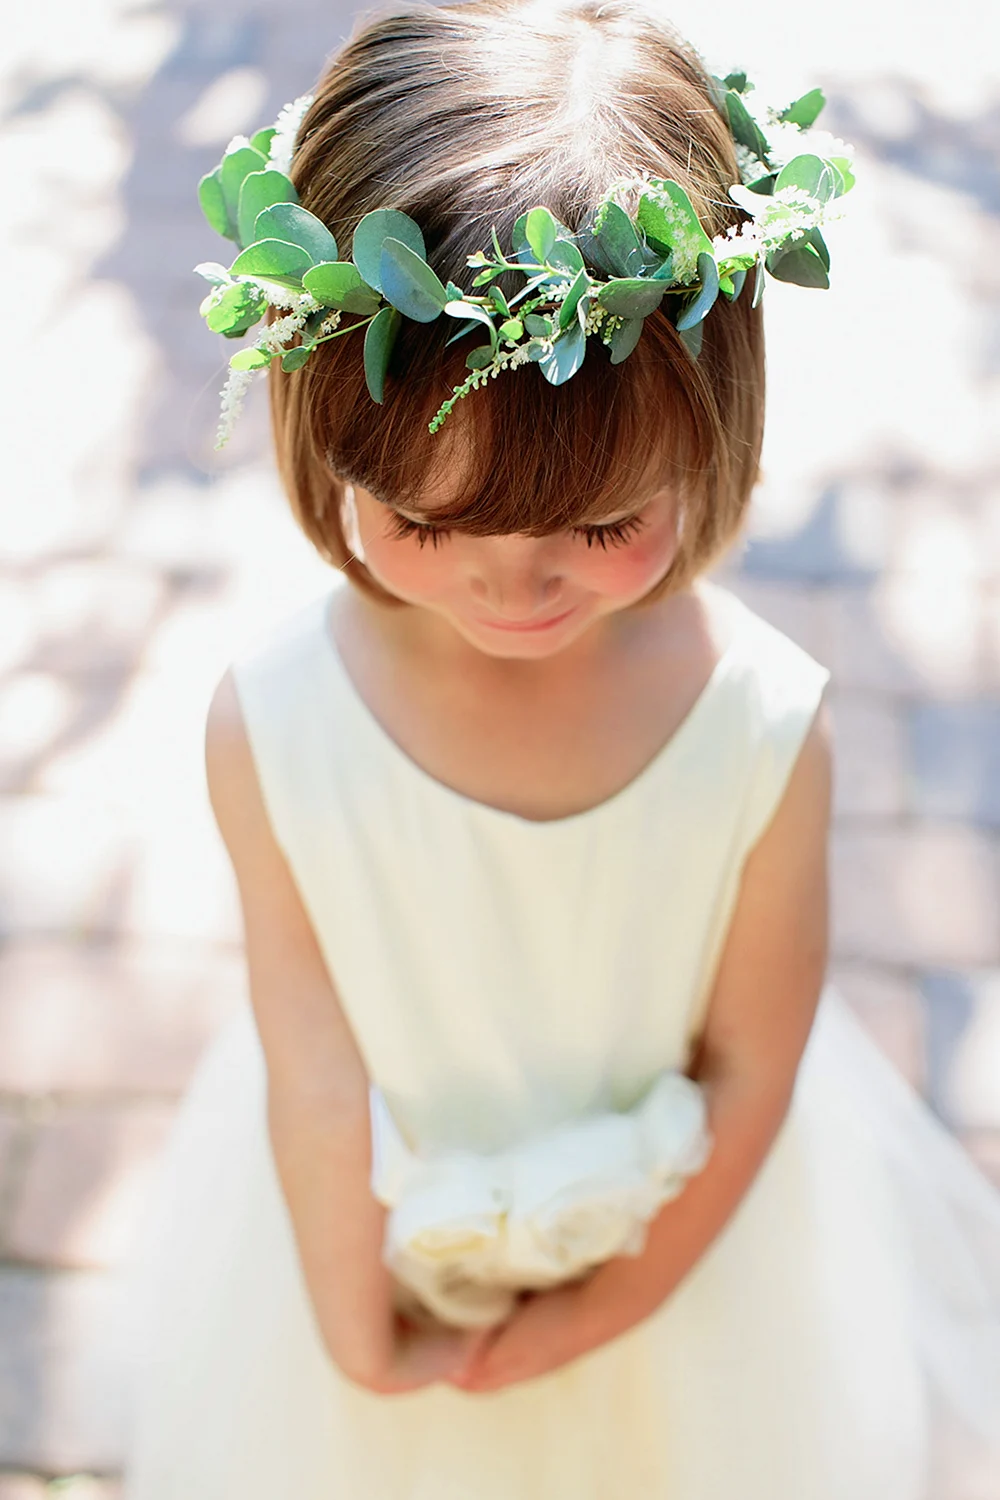 Cute Flower Crown